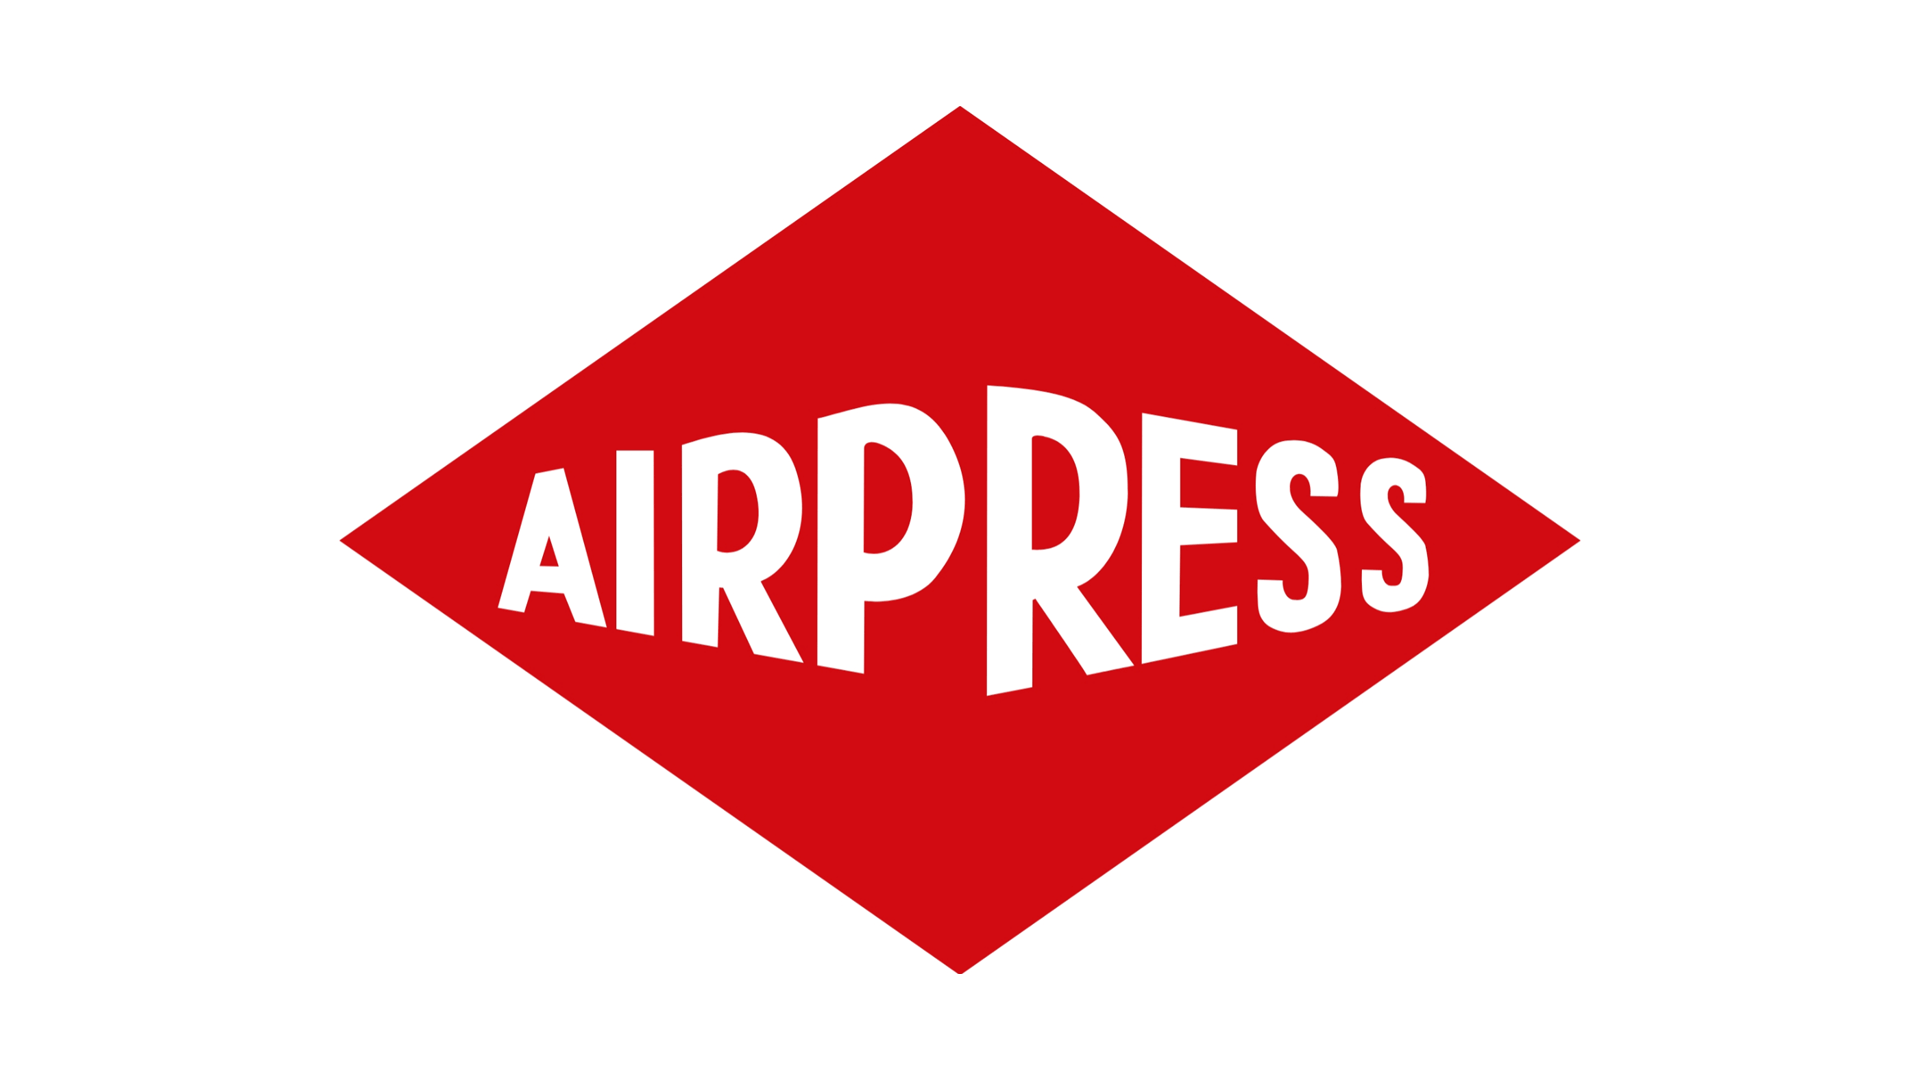 Carro de herramientas vacío - Airpress España